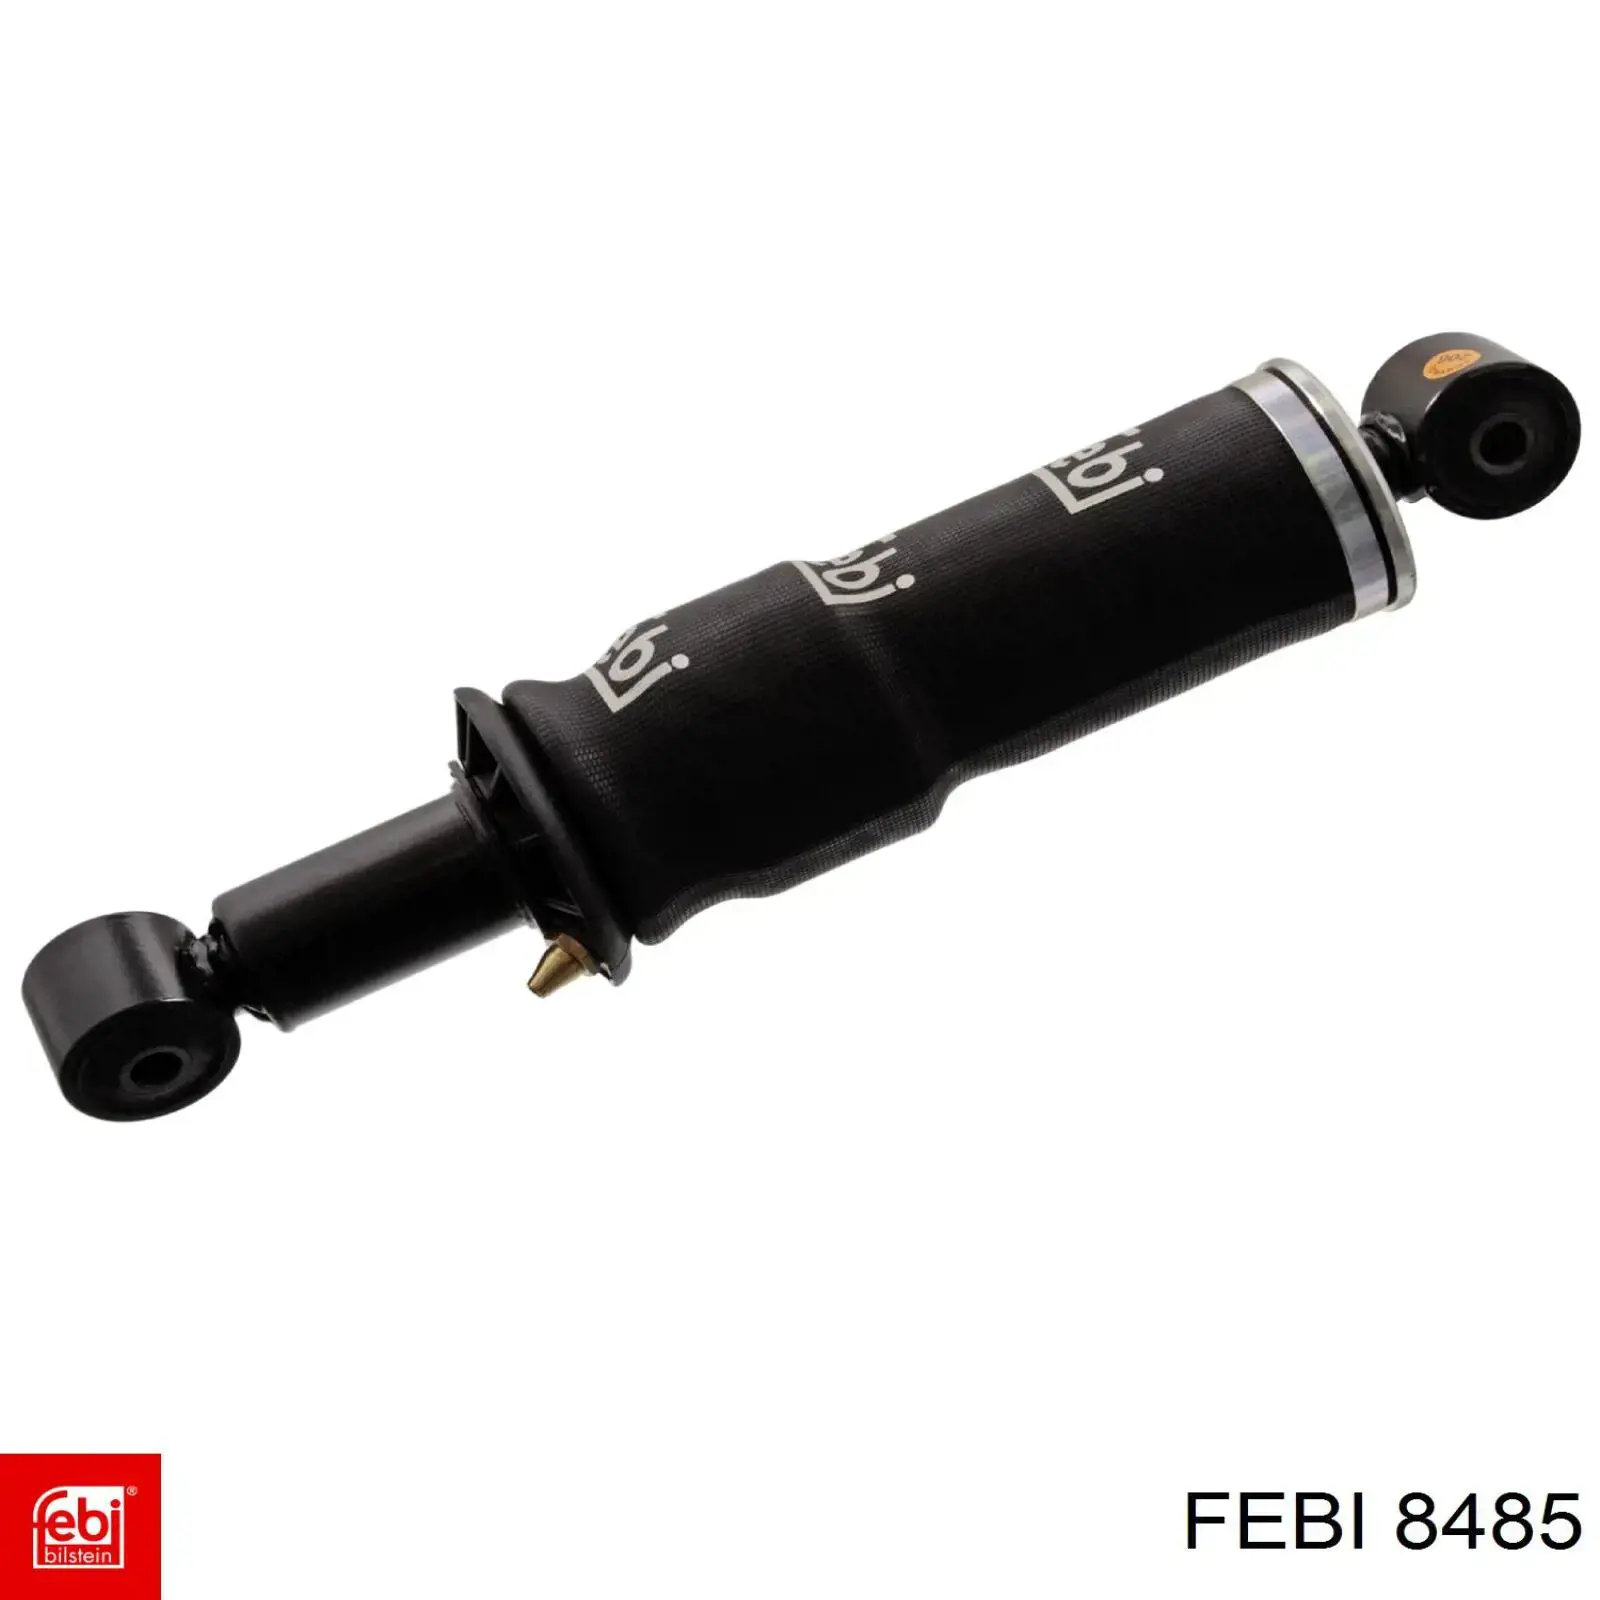 8485 Febi sensor de presión de aceite